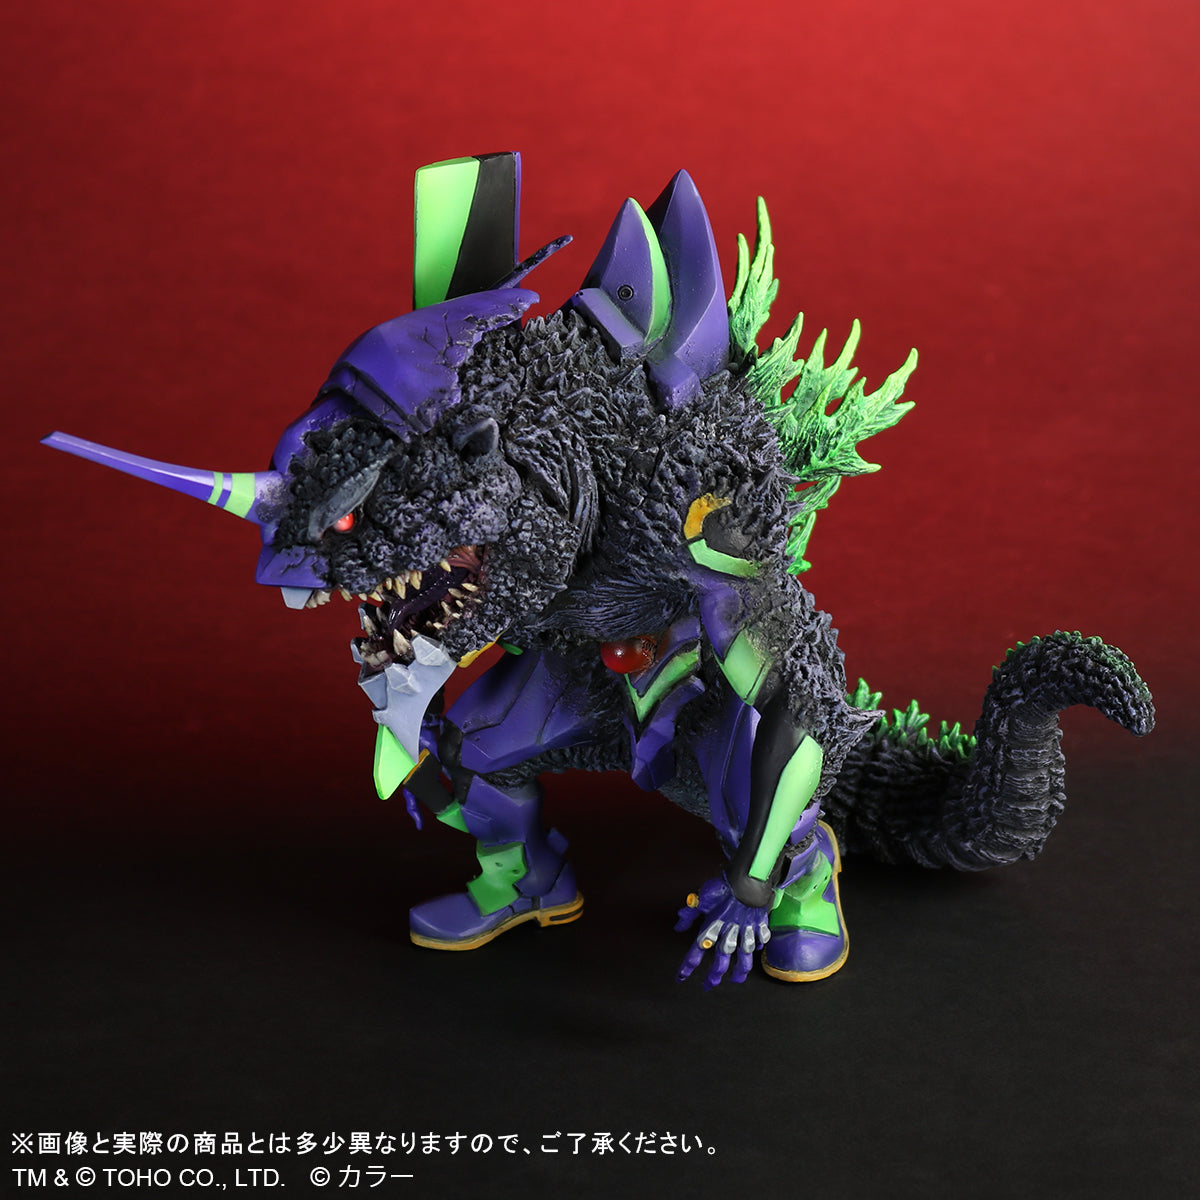 Deforeal Godzilla x Evangeleon First 